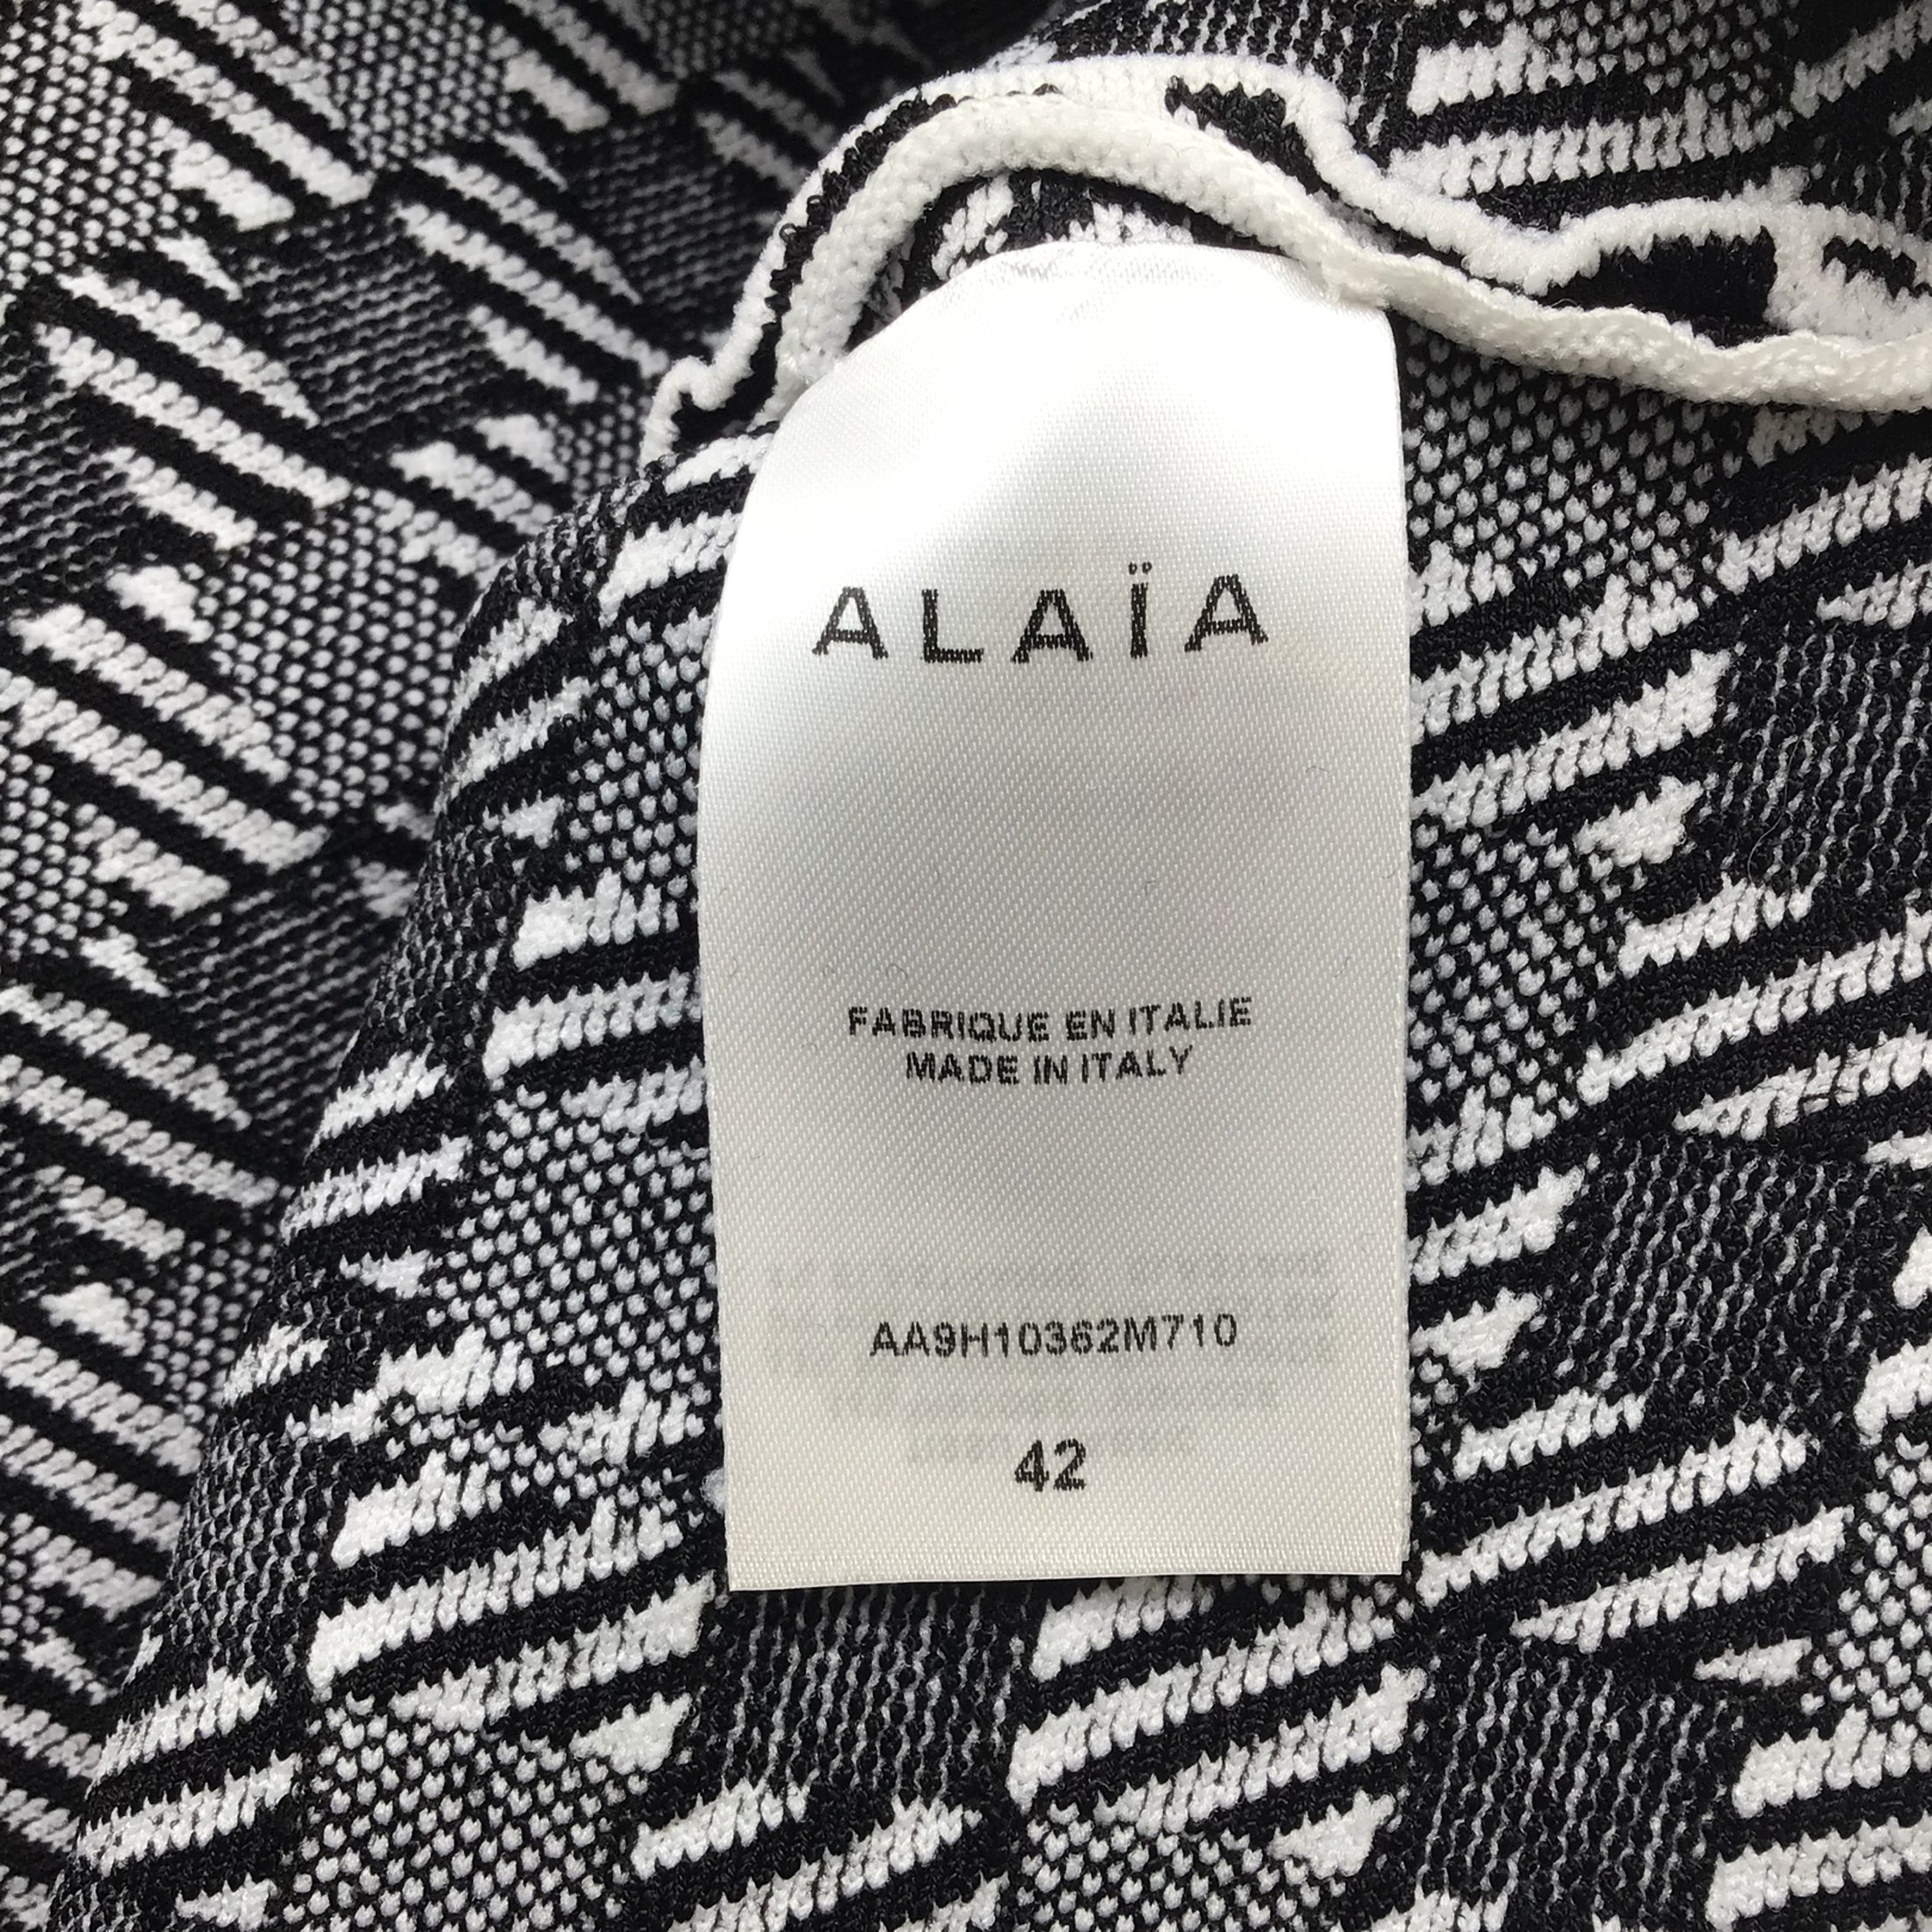 Alaia Black / White Cropped Check Knit Top